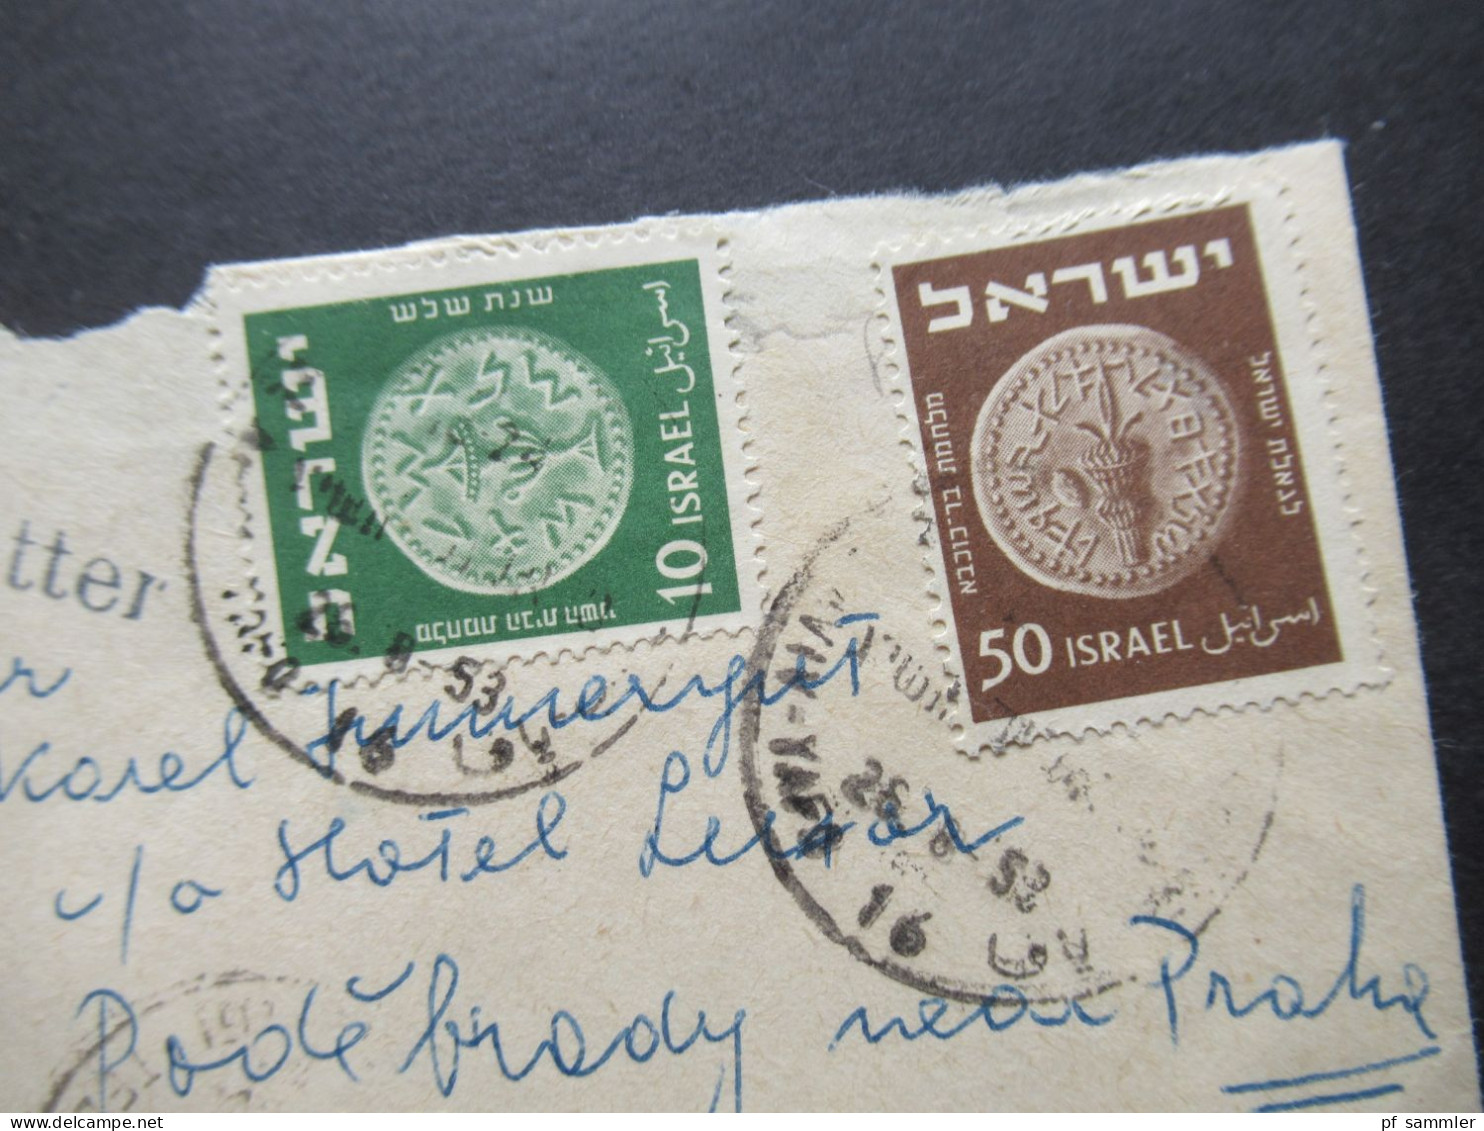 Israel 1953 By Air Mail / Luftpost In Die CSR Stempel L1 Printed Matter / Kleiner Umschlag - Briefe U. Dokumente